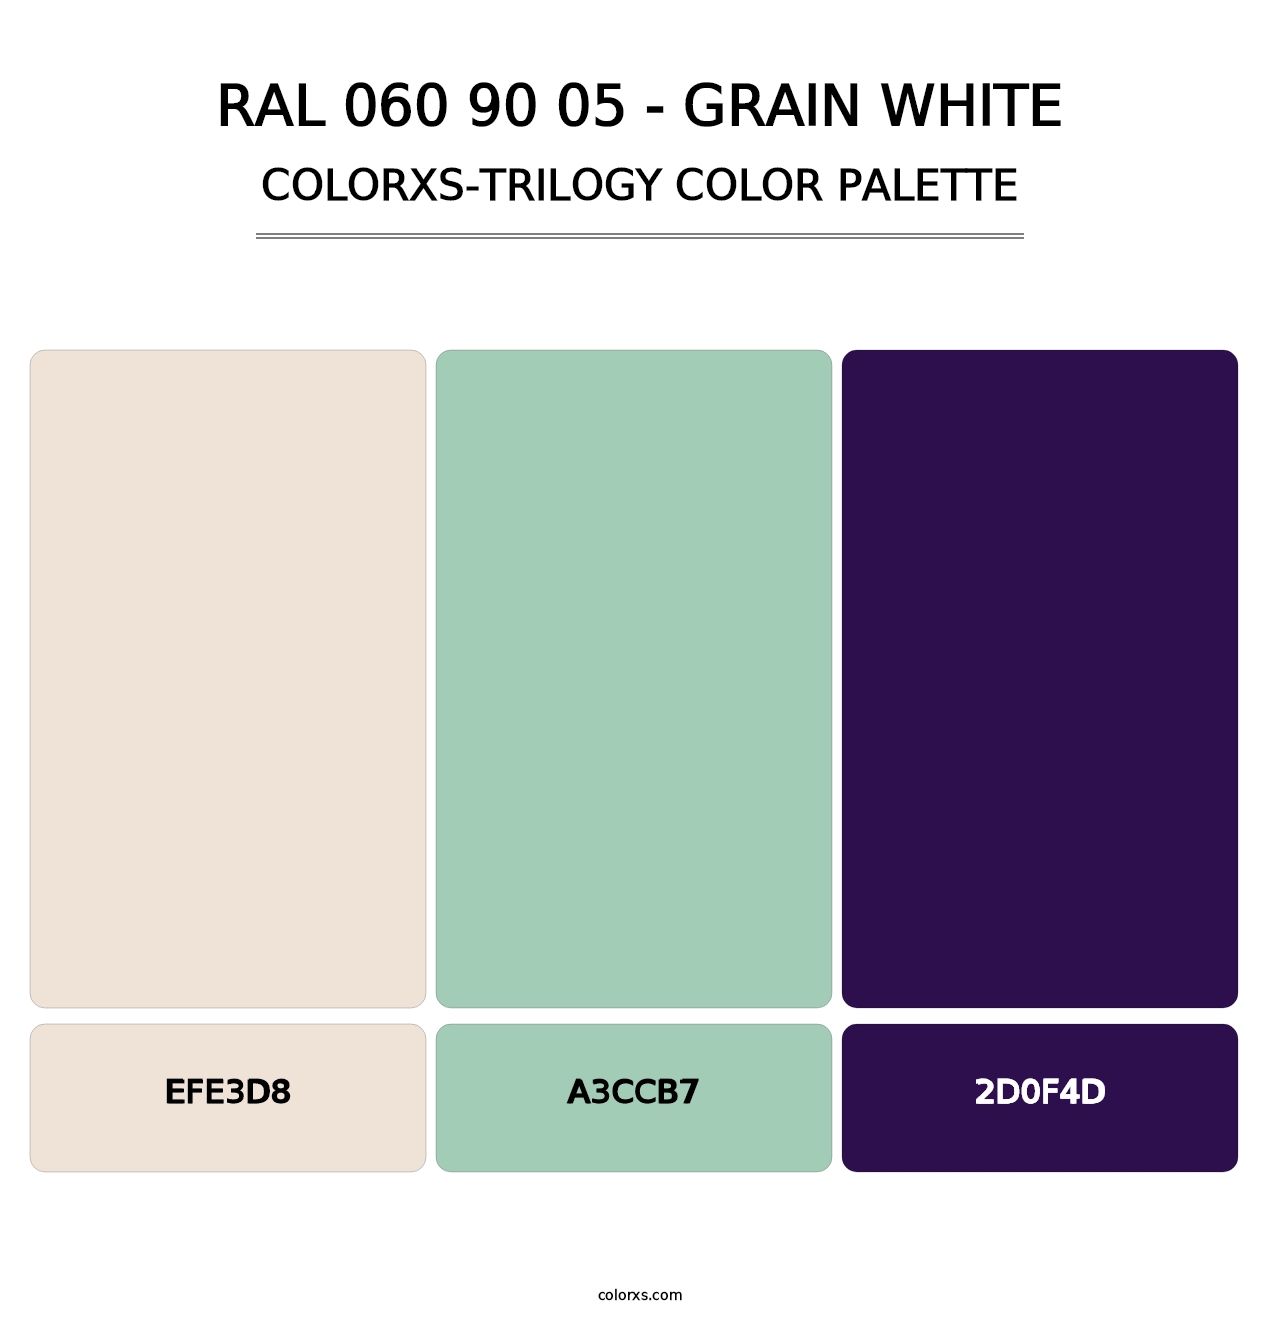 RAL 060 90 05 - Grain White - Colorxs Trilogy Palette